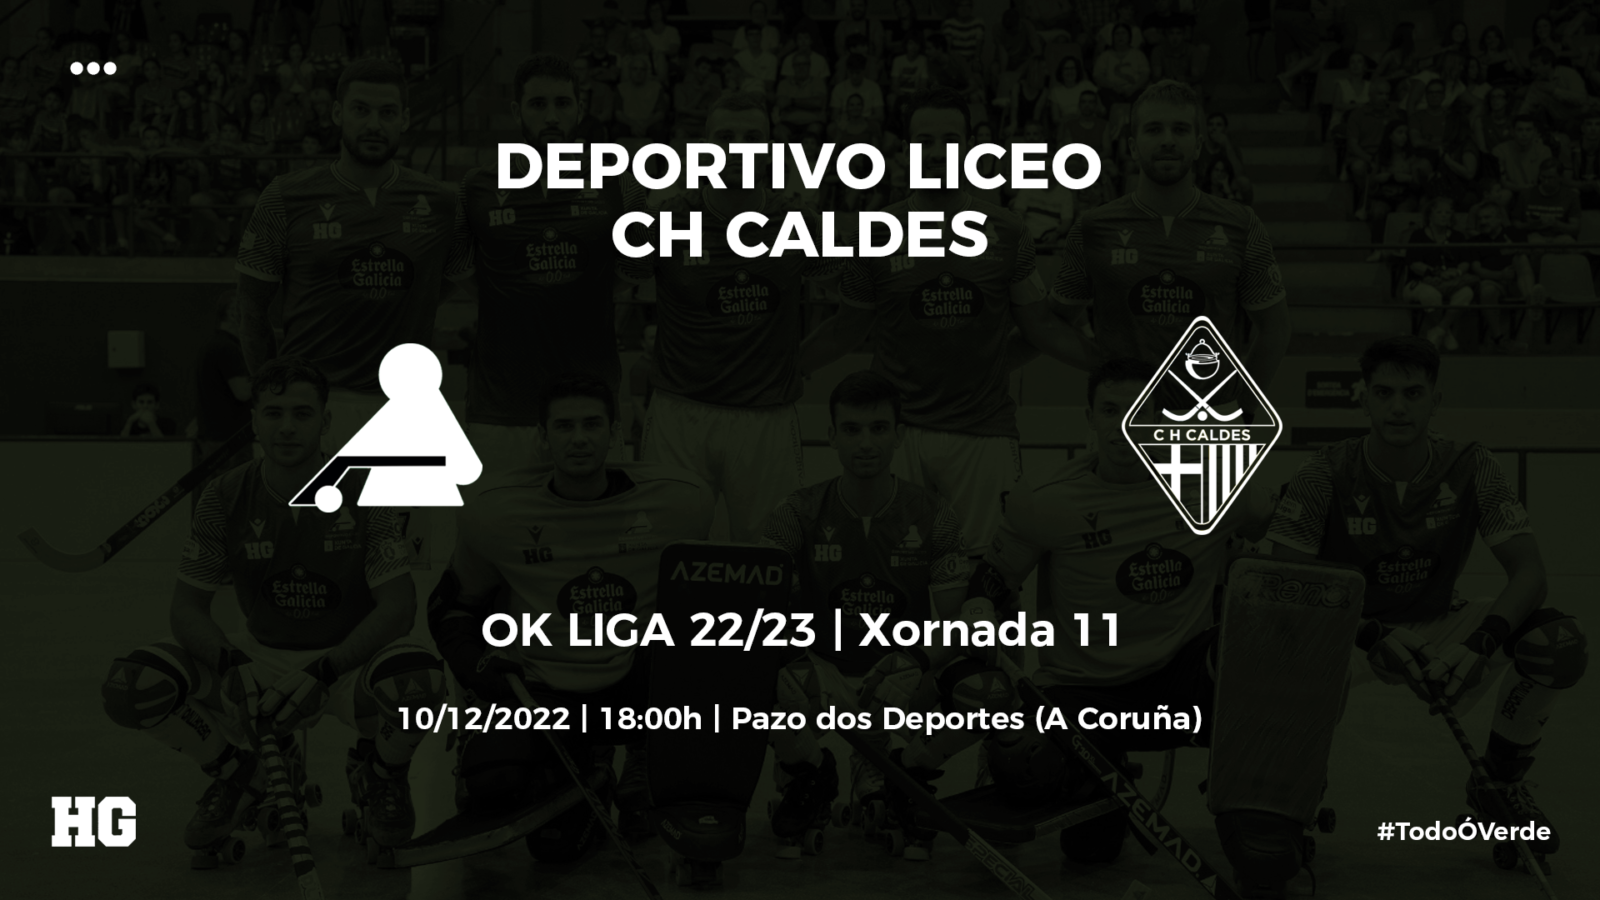 Entradas para o Deportivo Liceo-Caldes (OK Liga 22/23, xornada 11)